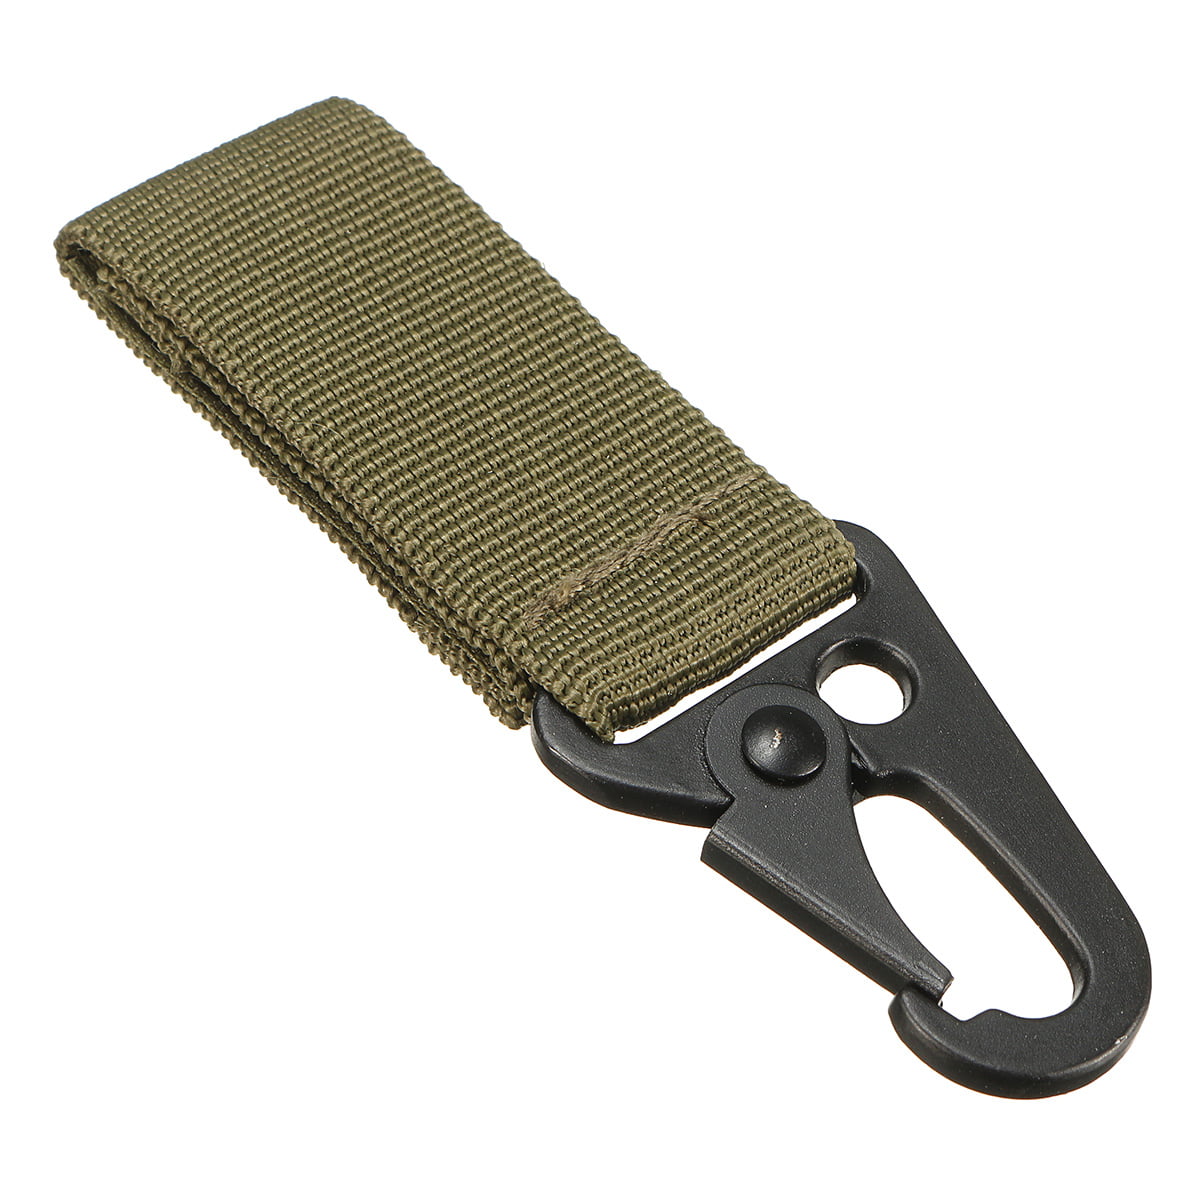 Details about   Nylon Tactical Molle Belt Carabiner Key Holder Camp Buckle Hook Bag Clip S7B9 